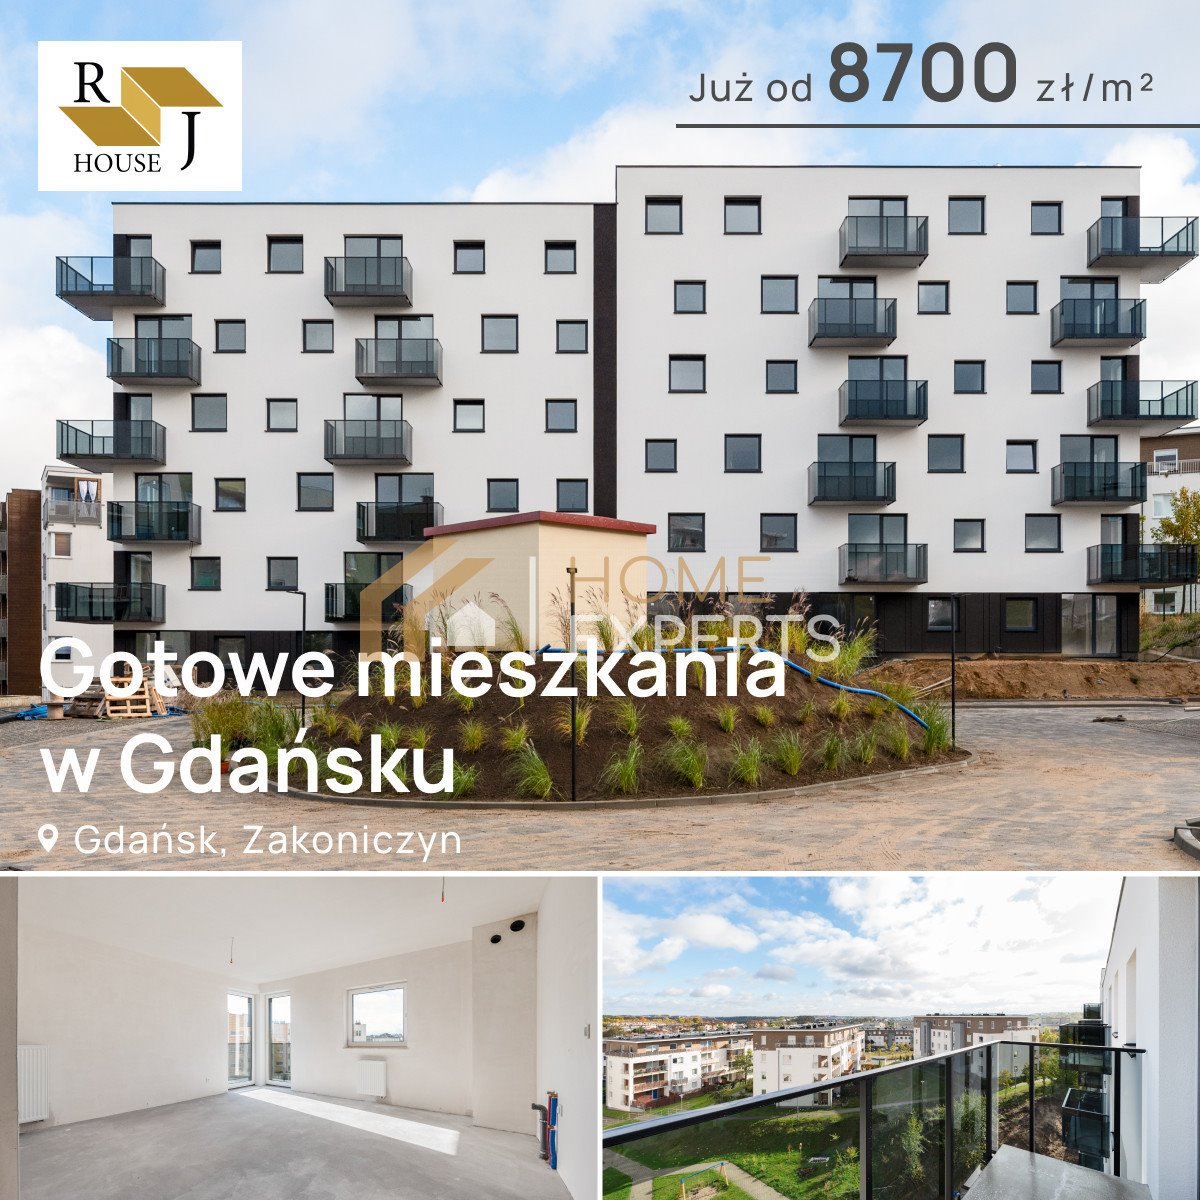 Mieszkanie trzypokojowe na sprzedaż Gdańsk, Zakoniczyn, Aleksandra Dulin'a  76m2 Foto 3